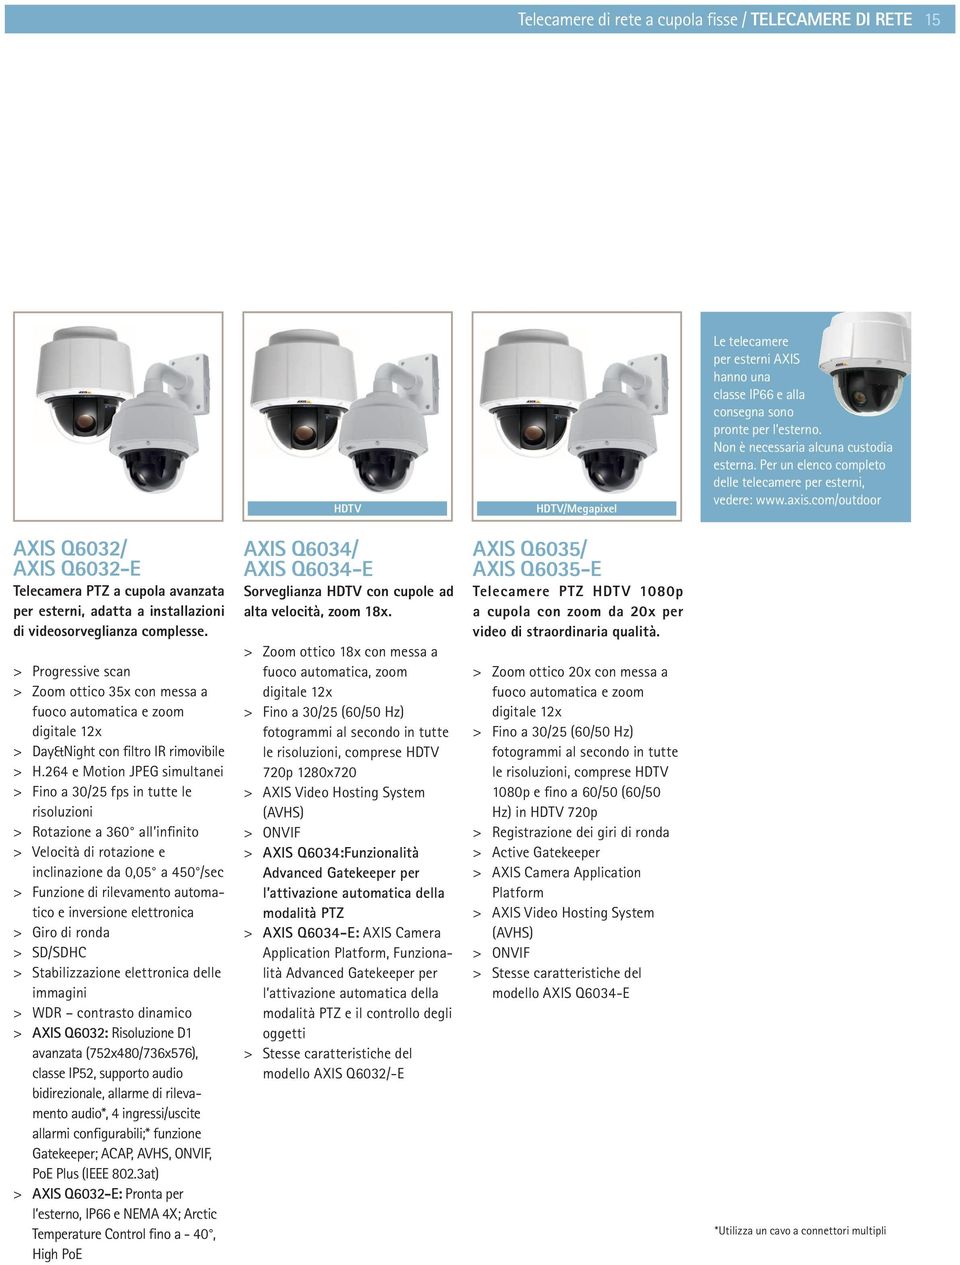 com/outdoor AXIS Q6032/ AXIS Q6032-E Telecamera PTZ a cupola avanzata per esterni, adatta a installazioni di videosorveglianza complesse.